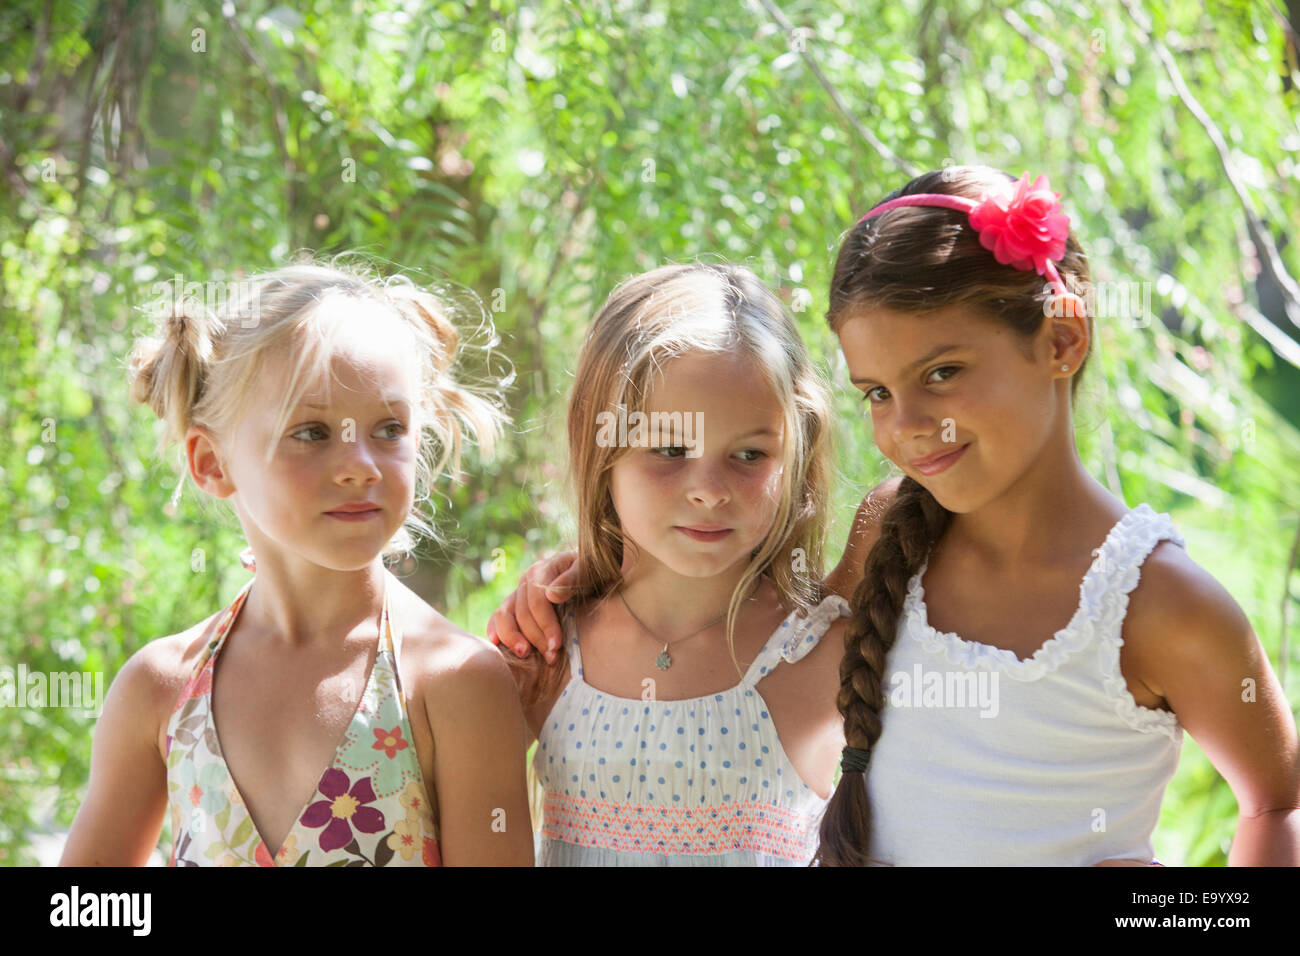 Cándido retrato de tres chicas en el jardín Foto de stock